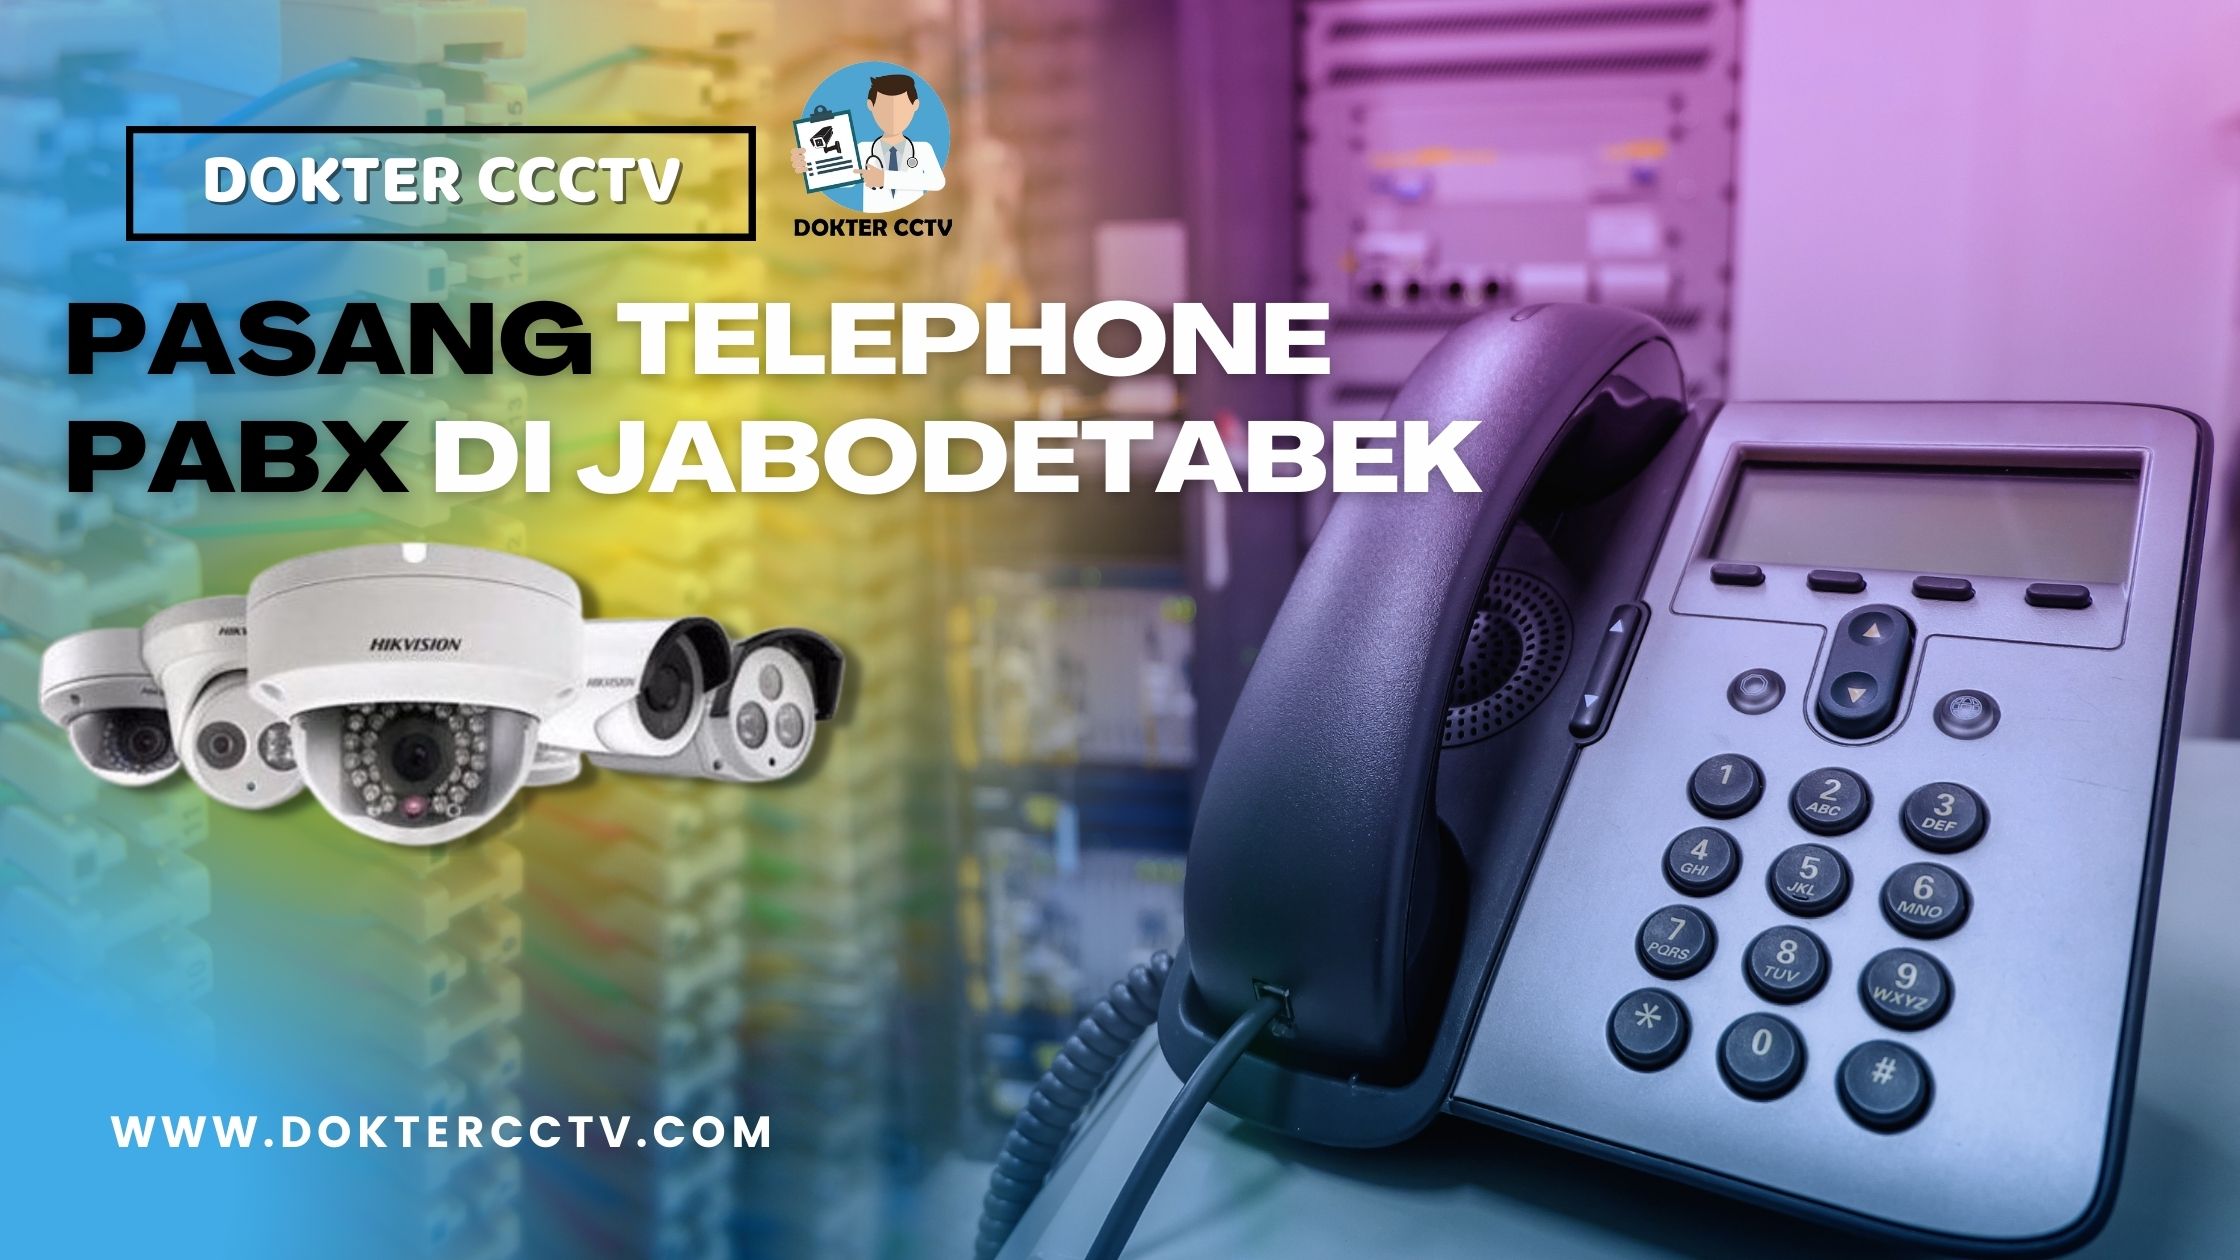 PASANG TELEPHONE PABX DI JABODETABEK